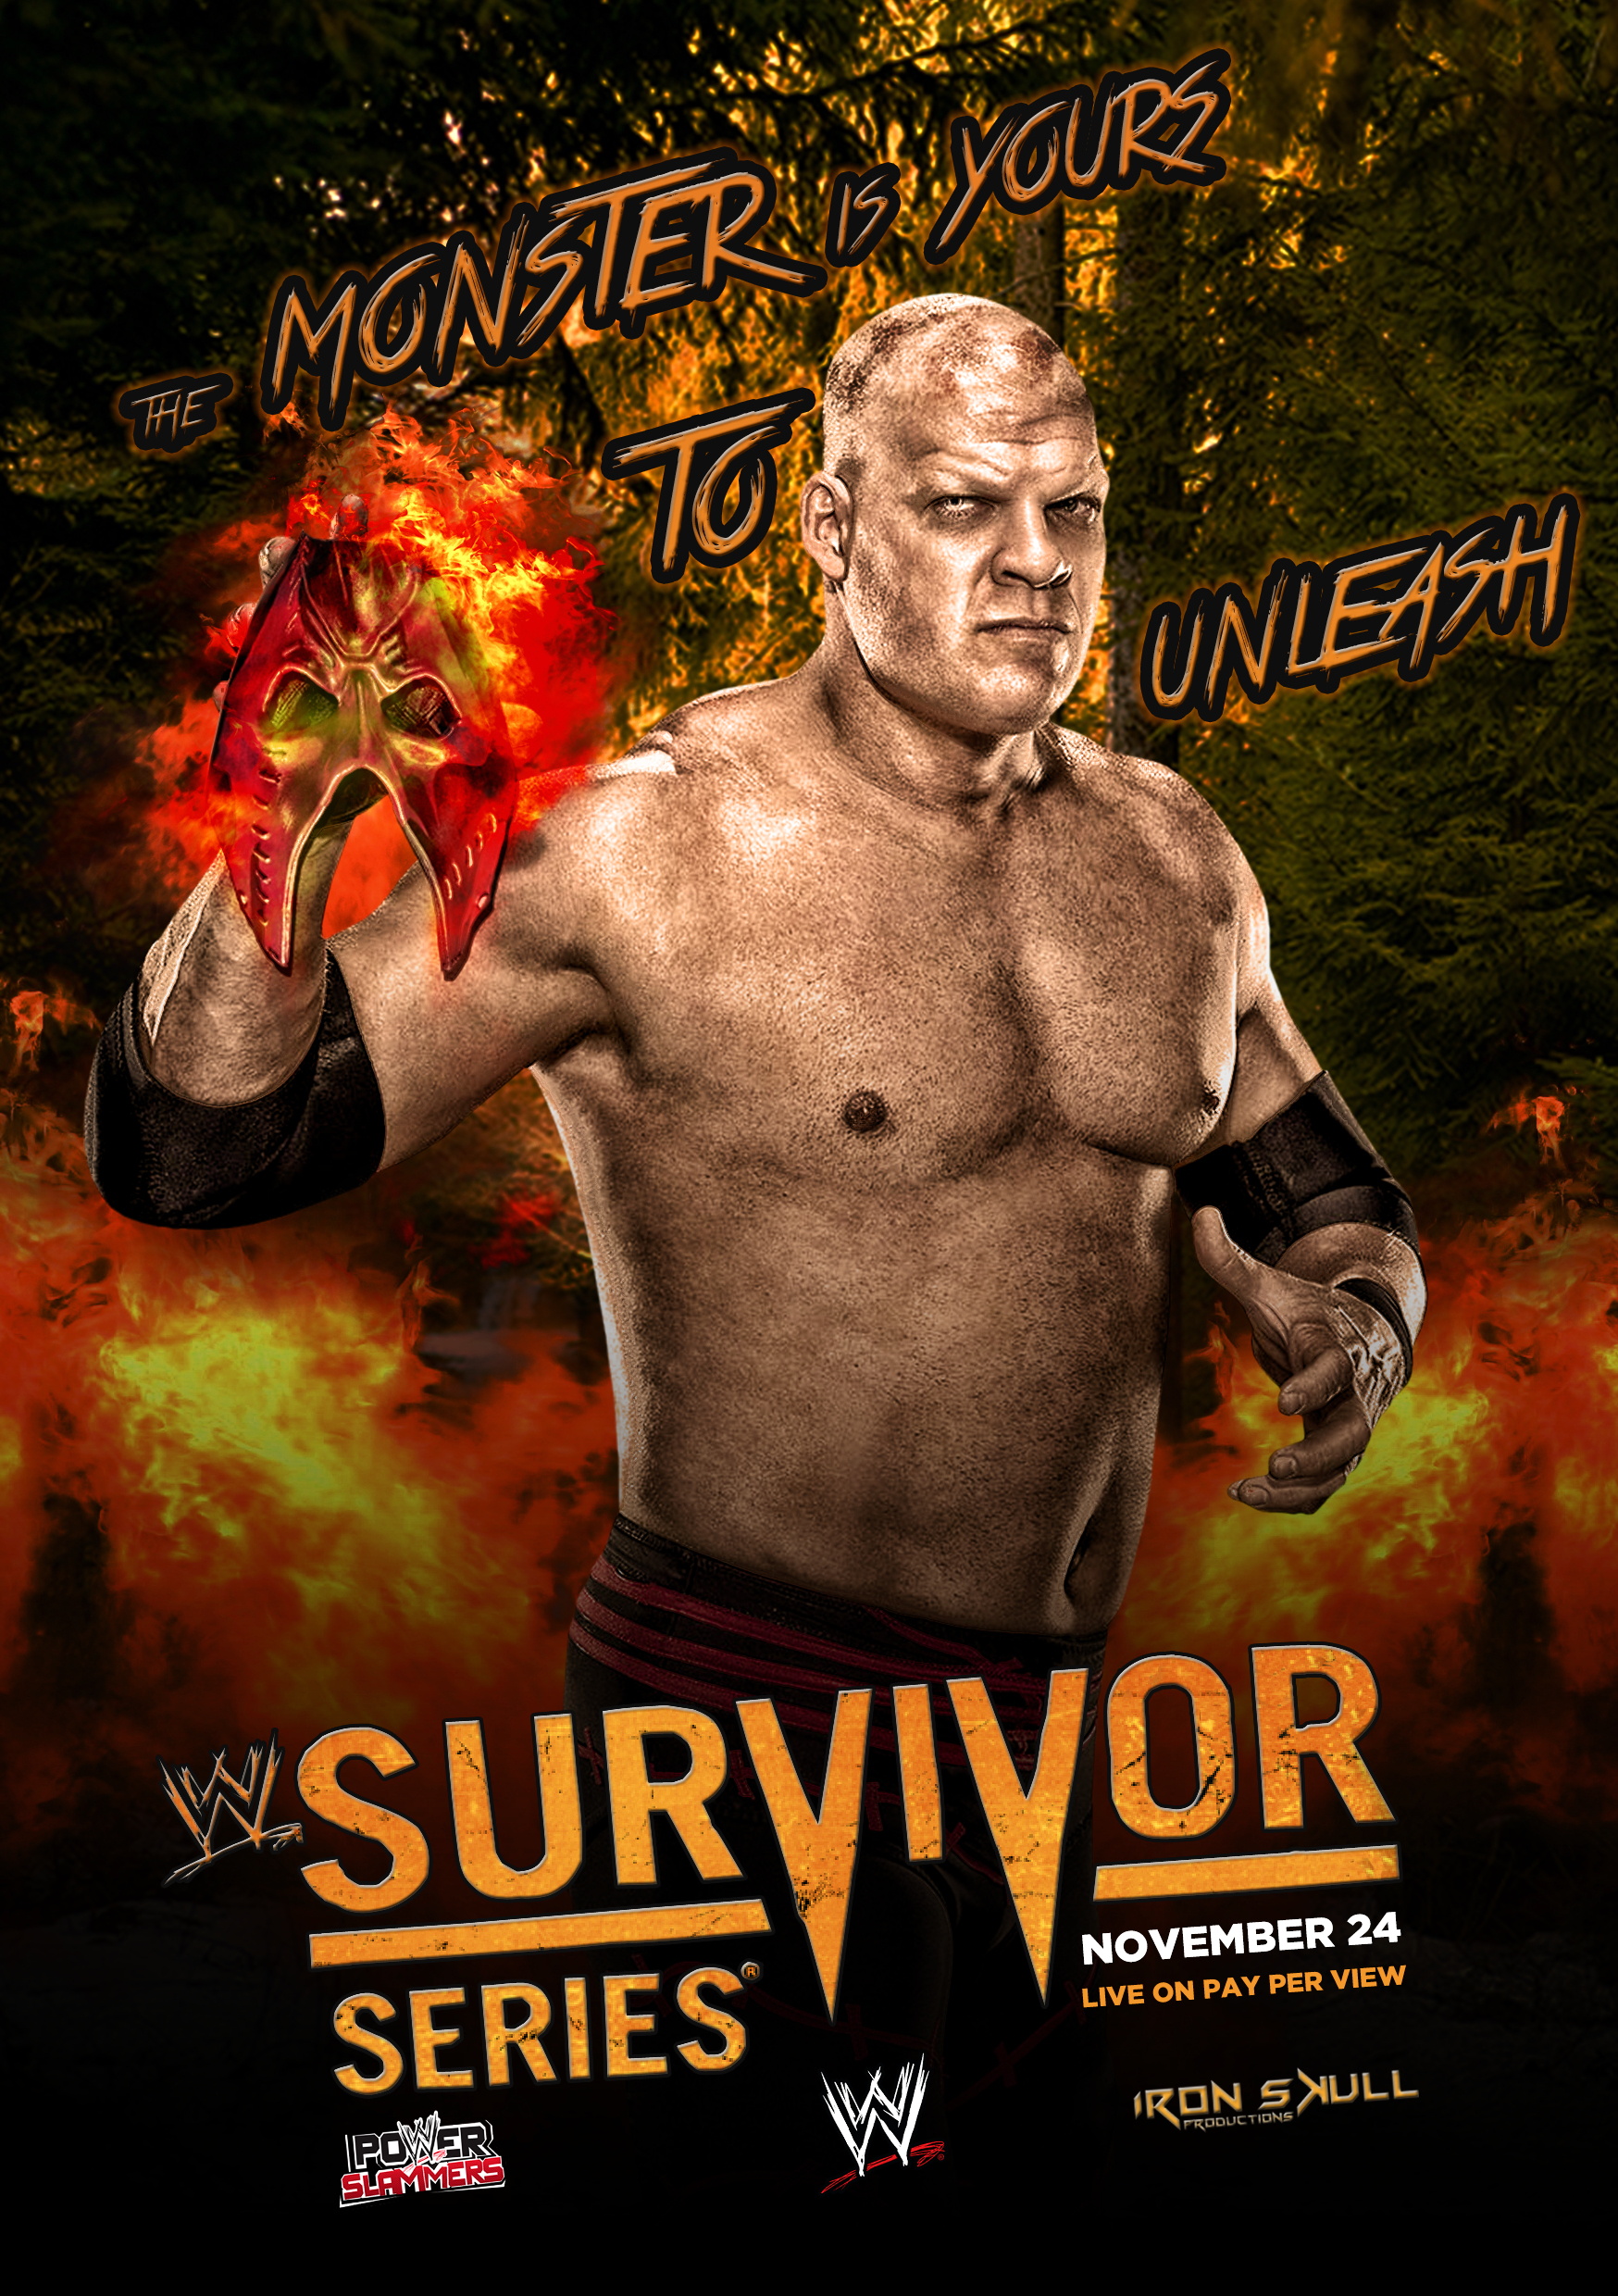 Image result for survivor series 2013 poster